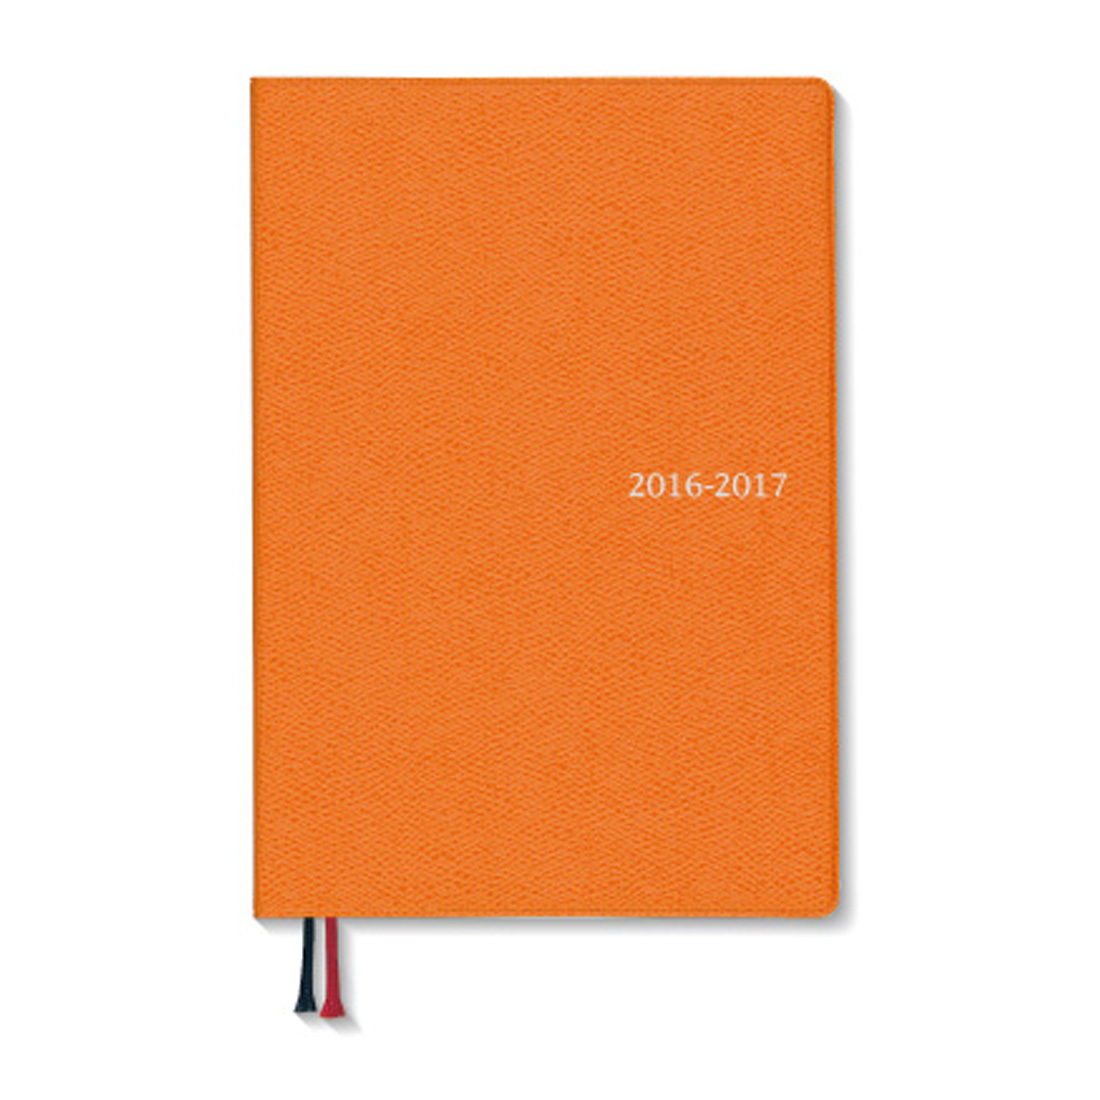 16 17 4月始まり Appoint デスク 1週間バーチカル B6 オレンジ E1165 21年版手帳 手帳 ダイアリー のダイゴーオンラインショップ